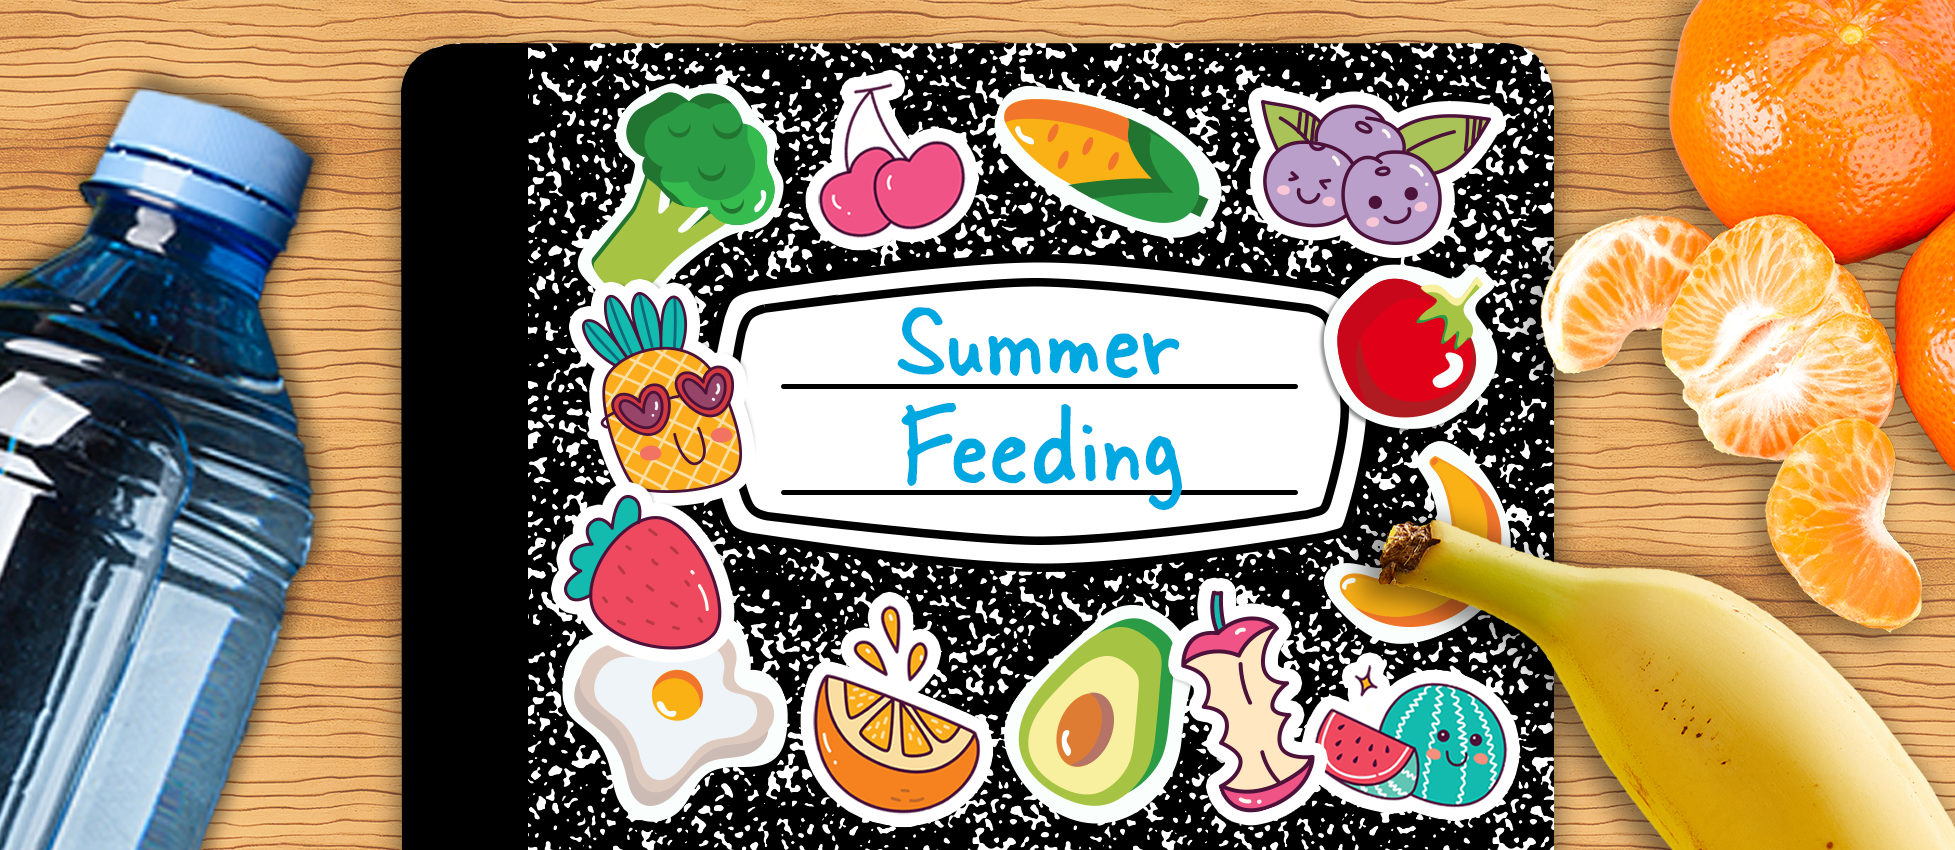 Summer Feeding